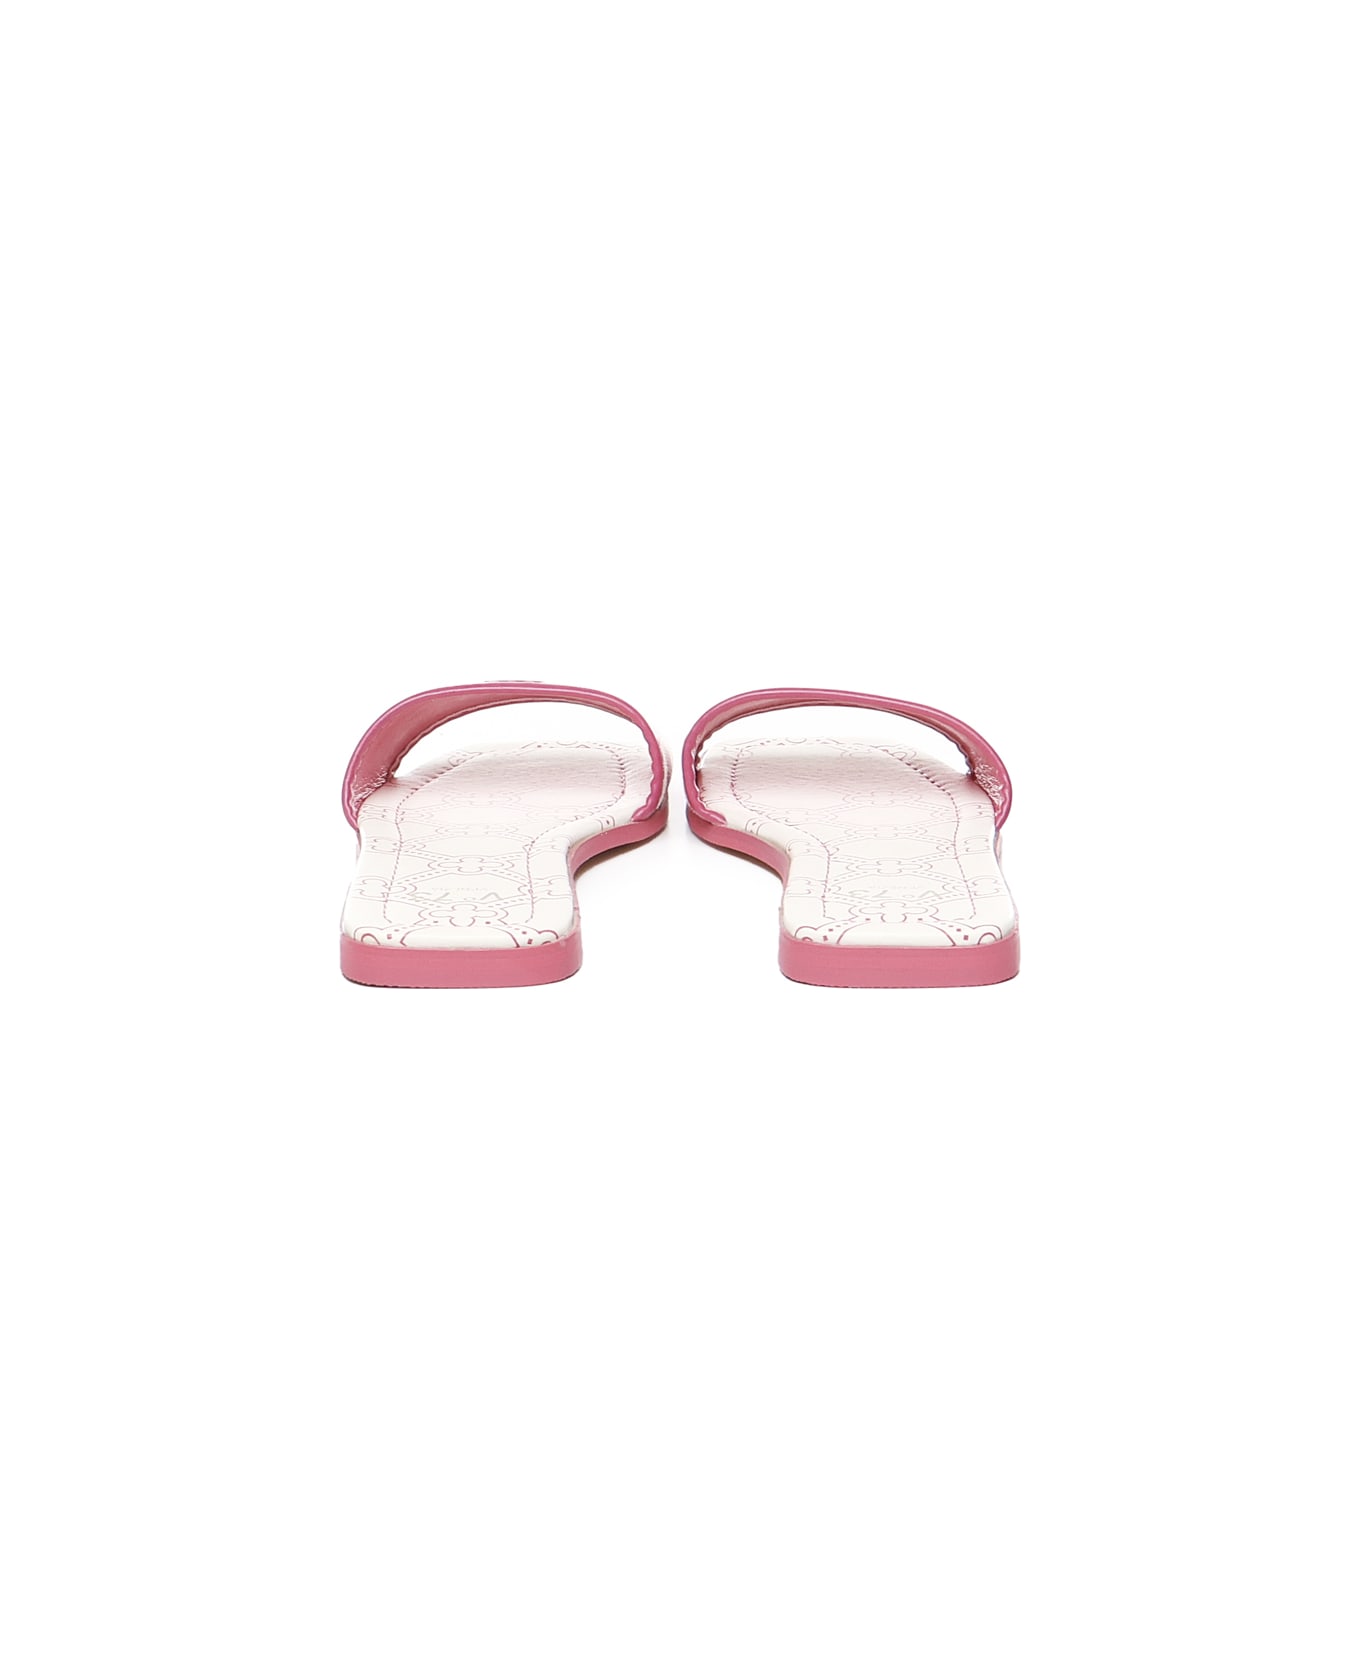 V73 Flat Spirit Sandals In Leather - Pink